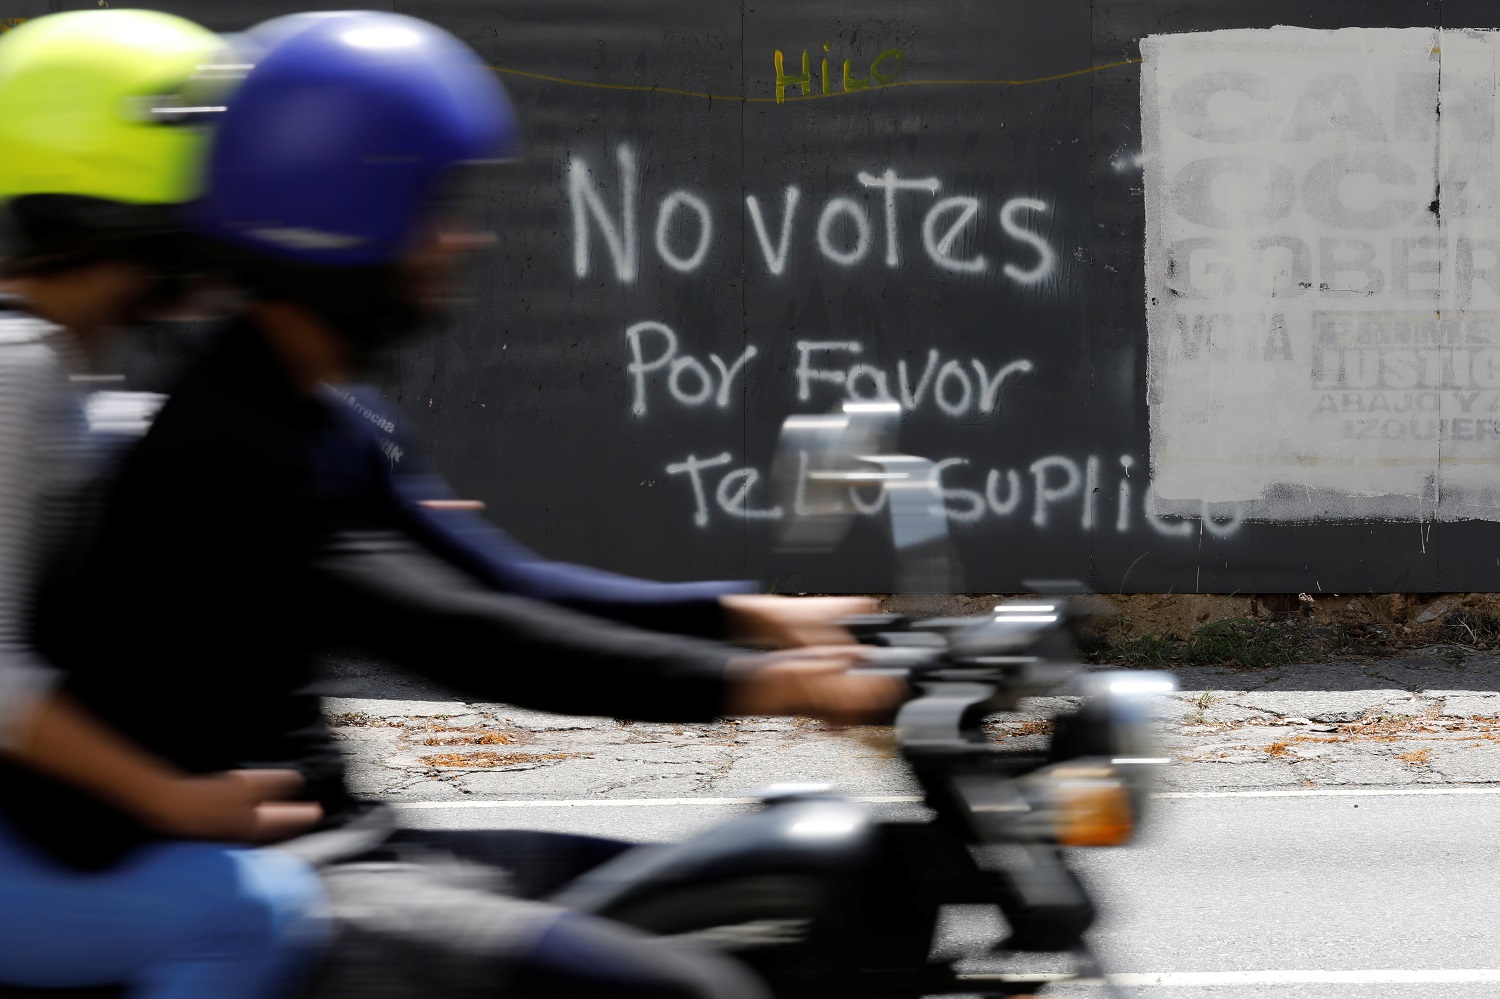 Una motocicleta atraviesa delante de un graffiti pintado en una barda en Caracas, Venezuela, 12 de mayo, 2018. El grafiti dice: "No votes, por favor te lo suplico". REUTERS/Carlos Jasso - RC1B4B72EEA0